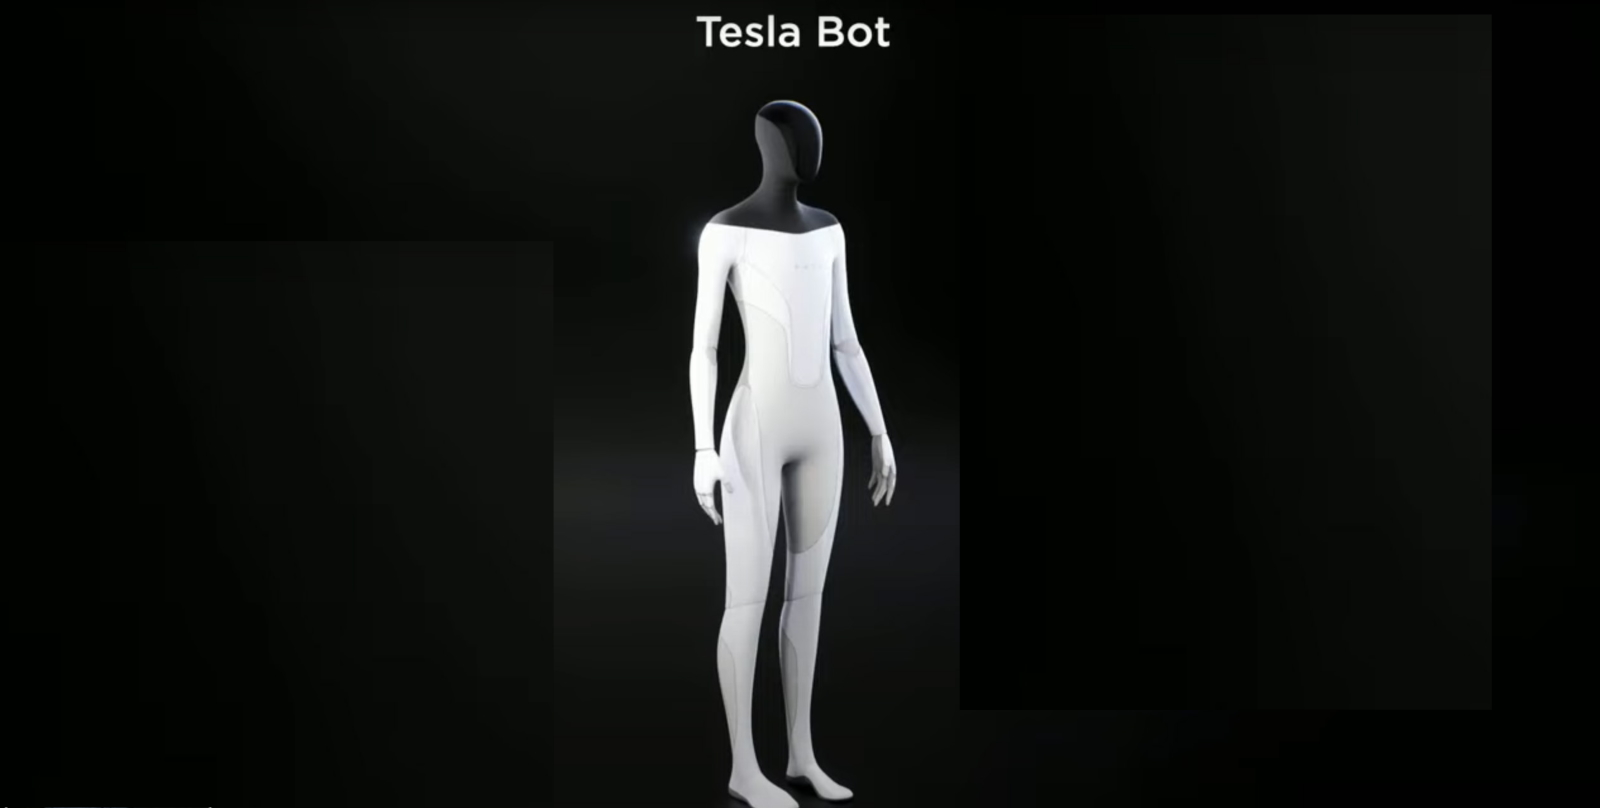 Le robot adopte une apparence humanoïde pour mieux s’intégrer à son environnement et remplacer les humains dans leurs tâches quotidiennes à la maison. © Tesla